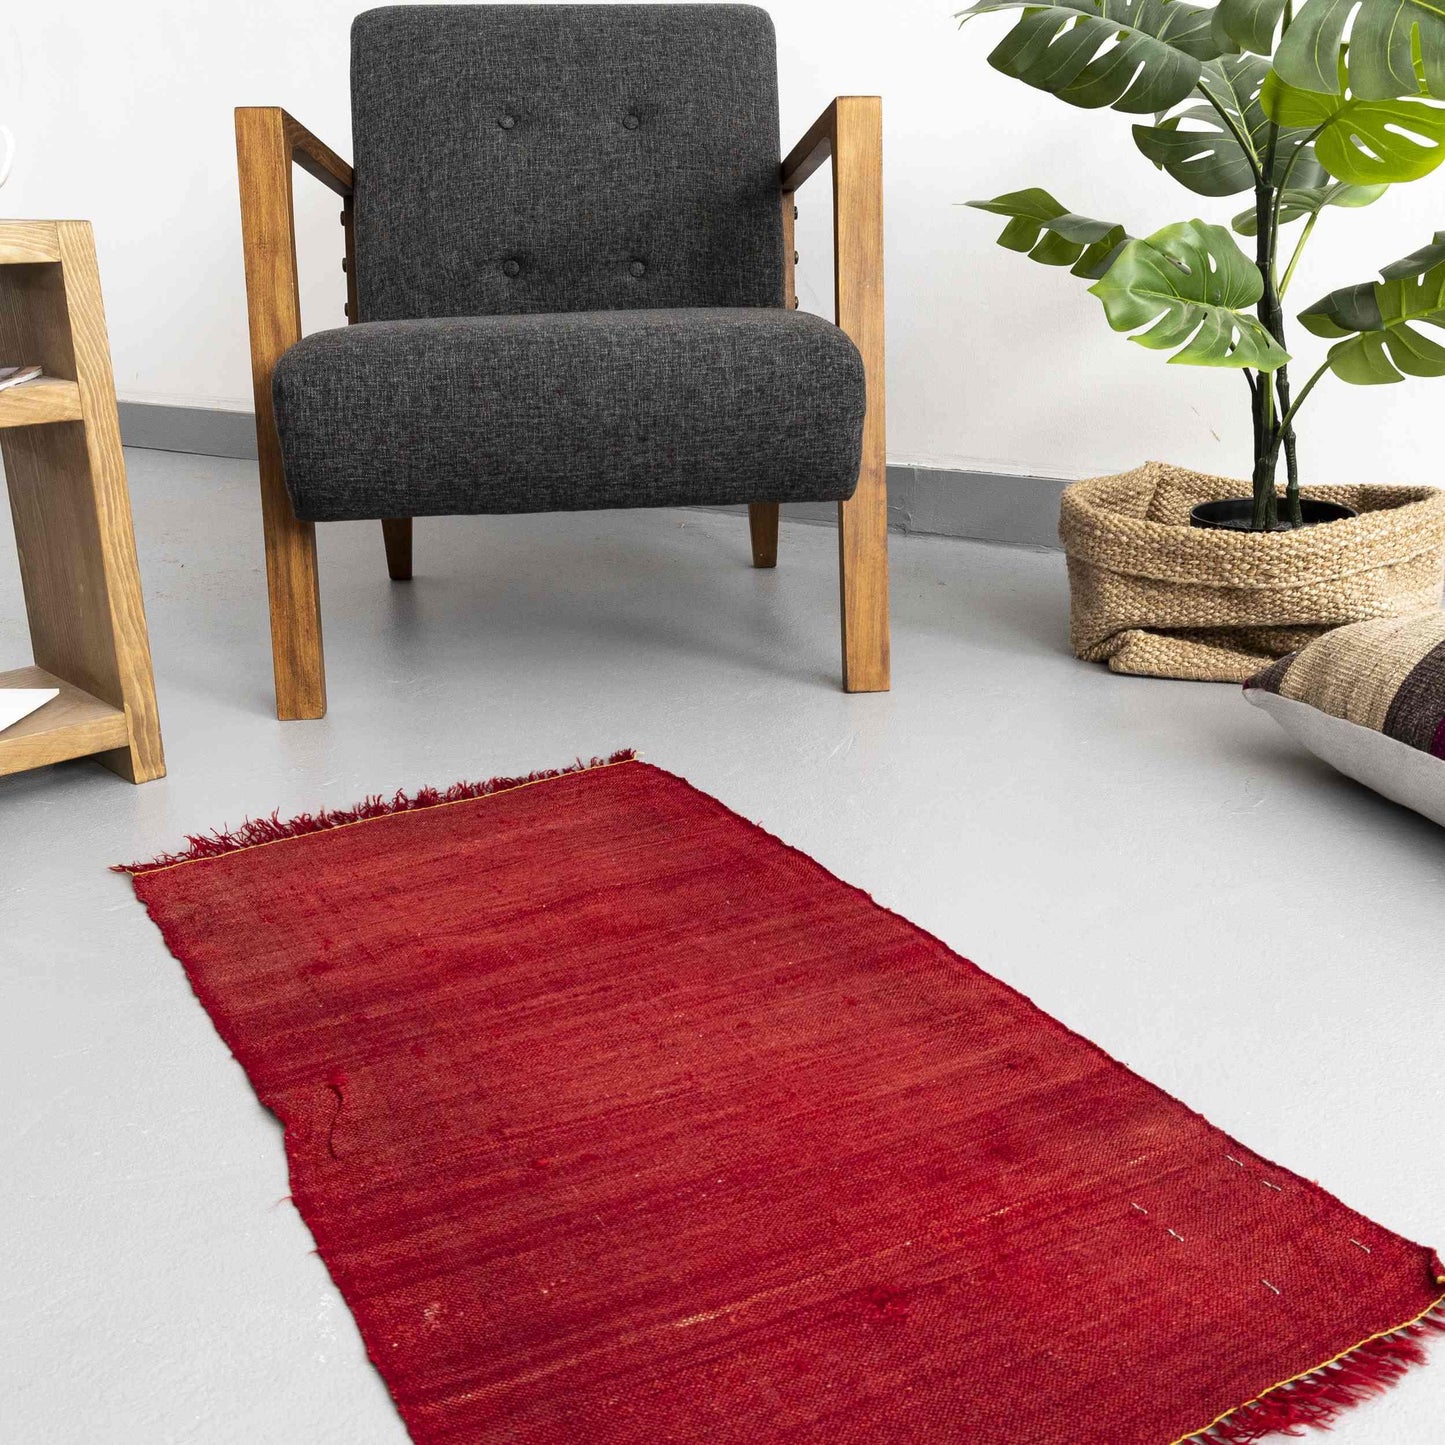 Oriental Kilim Perde Handmade Wool On Wool 60 x 90 Cm - 2' x 3' Red C014 ER01